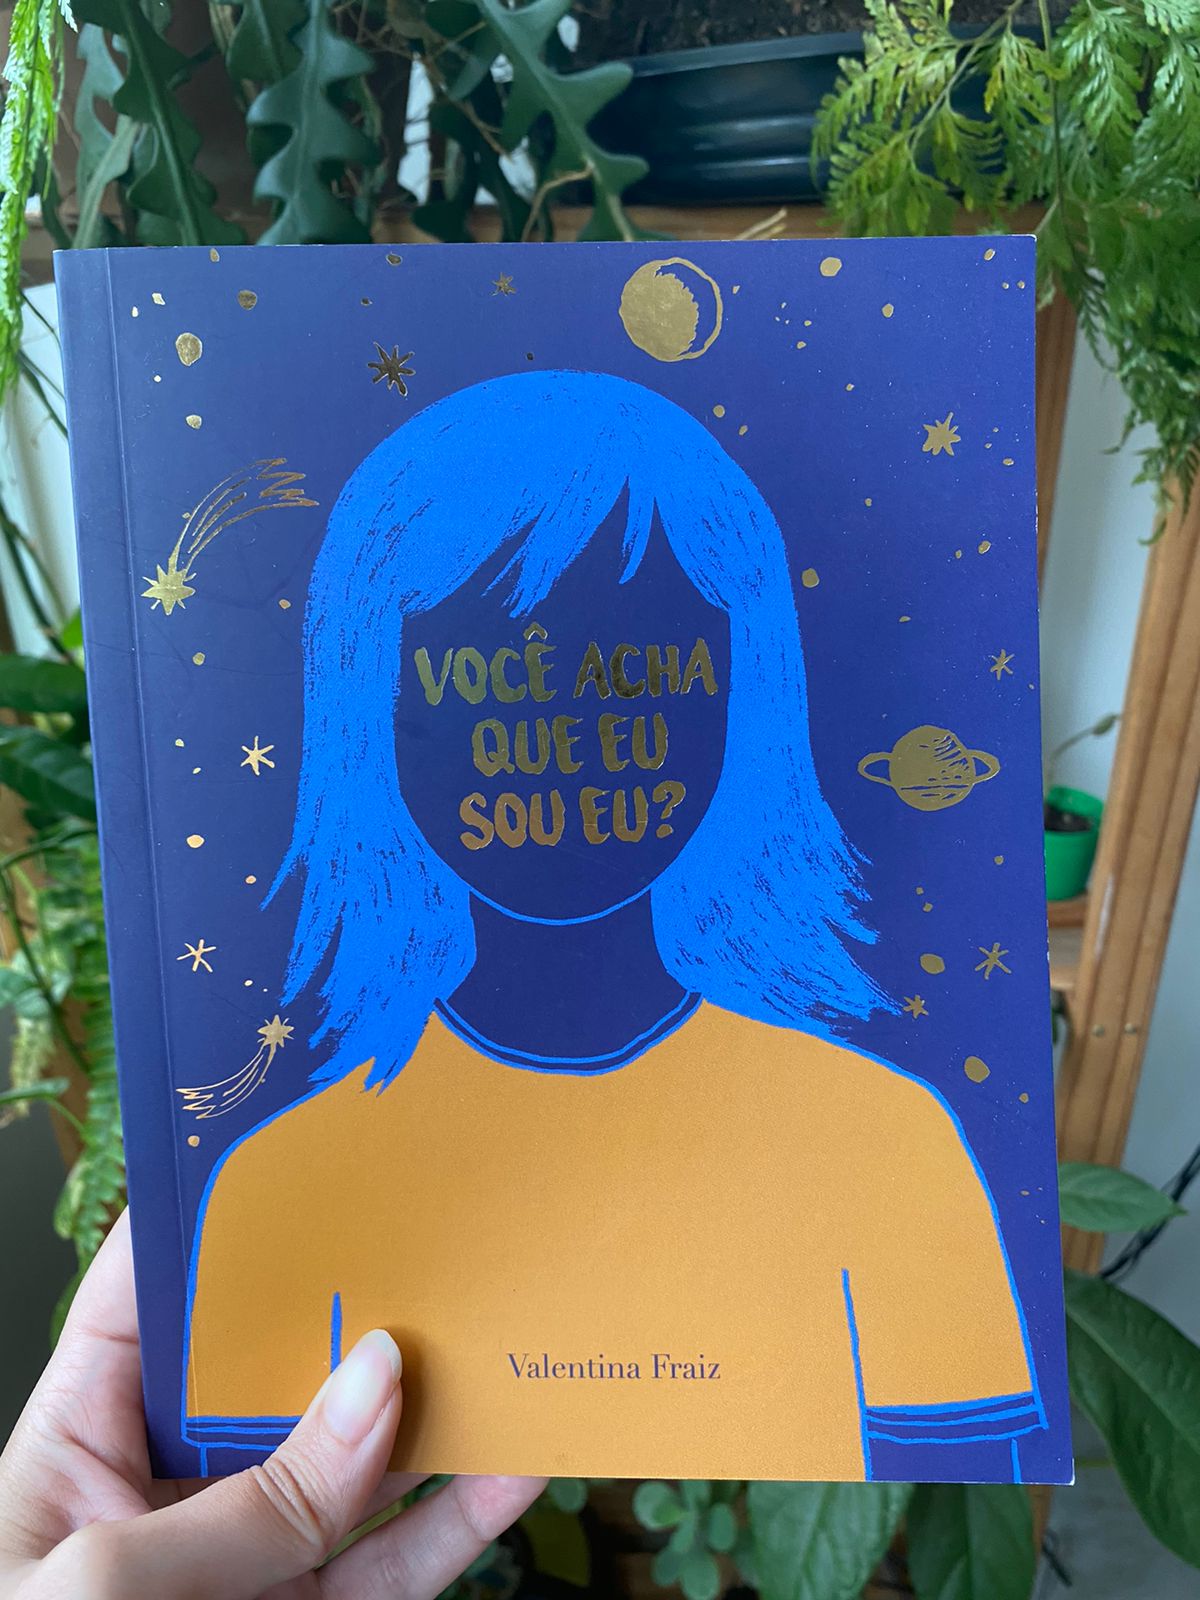 Foto da capa do livro: Você acha que eu sou eu? O título é escrito em dourado no lugar do rosto de uma garota com cabelos azuis, cercada de planetas e estrelas também dourados